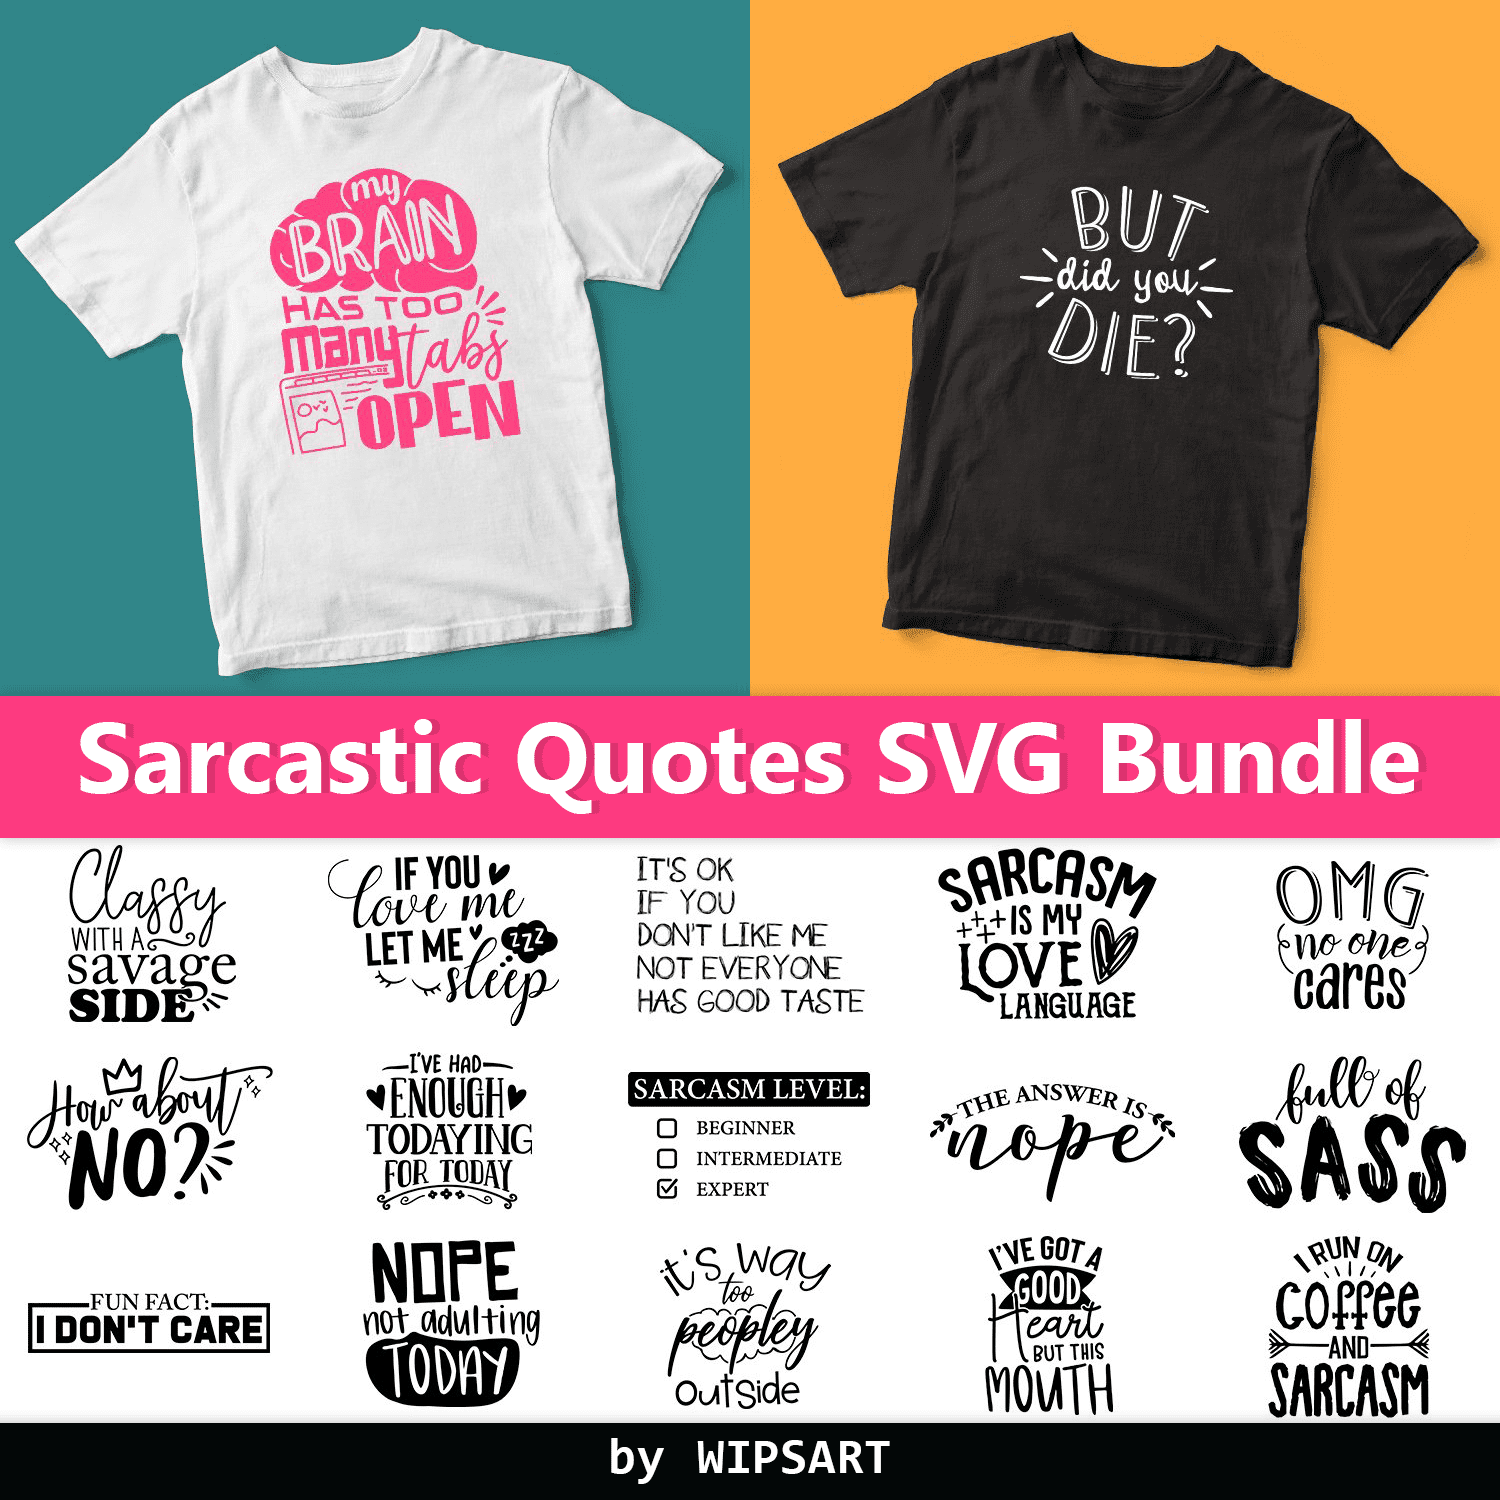 Sarcastic Quotes SVG Bundle - Funny SVG Bundle cover.